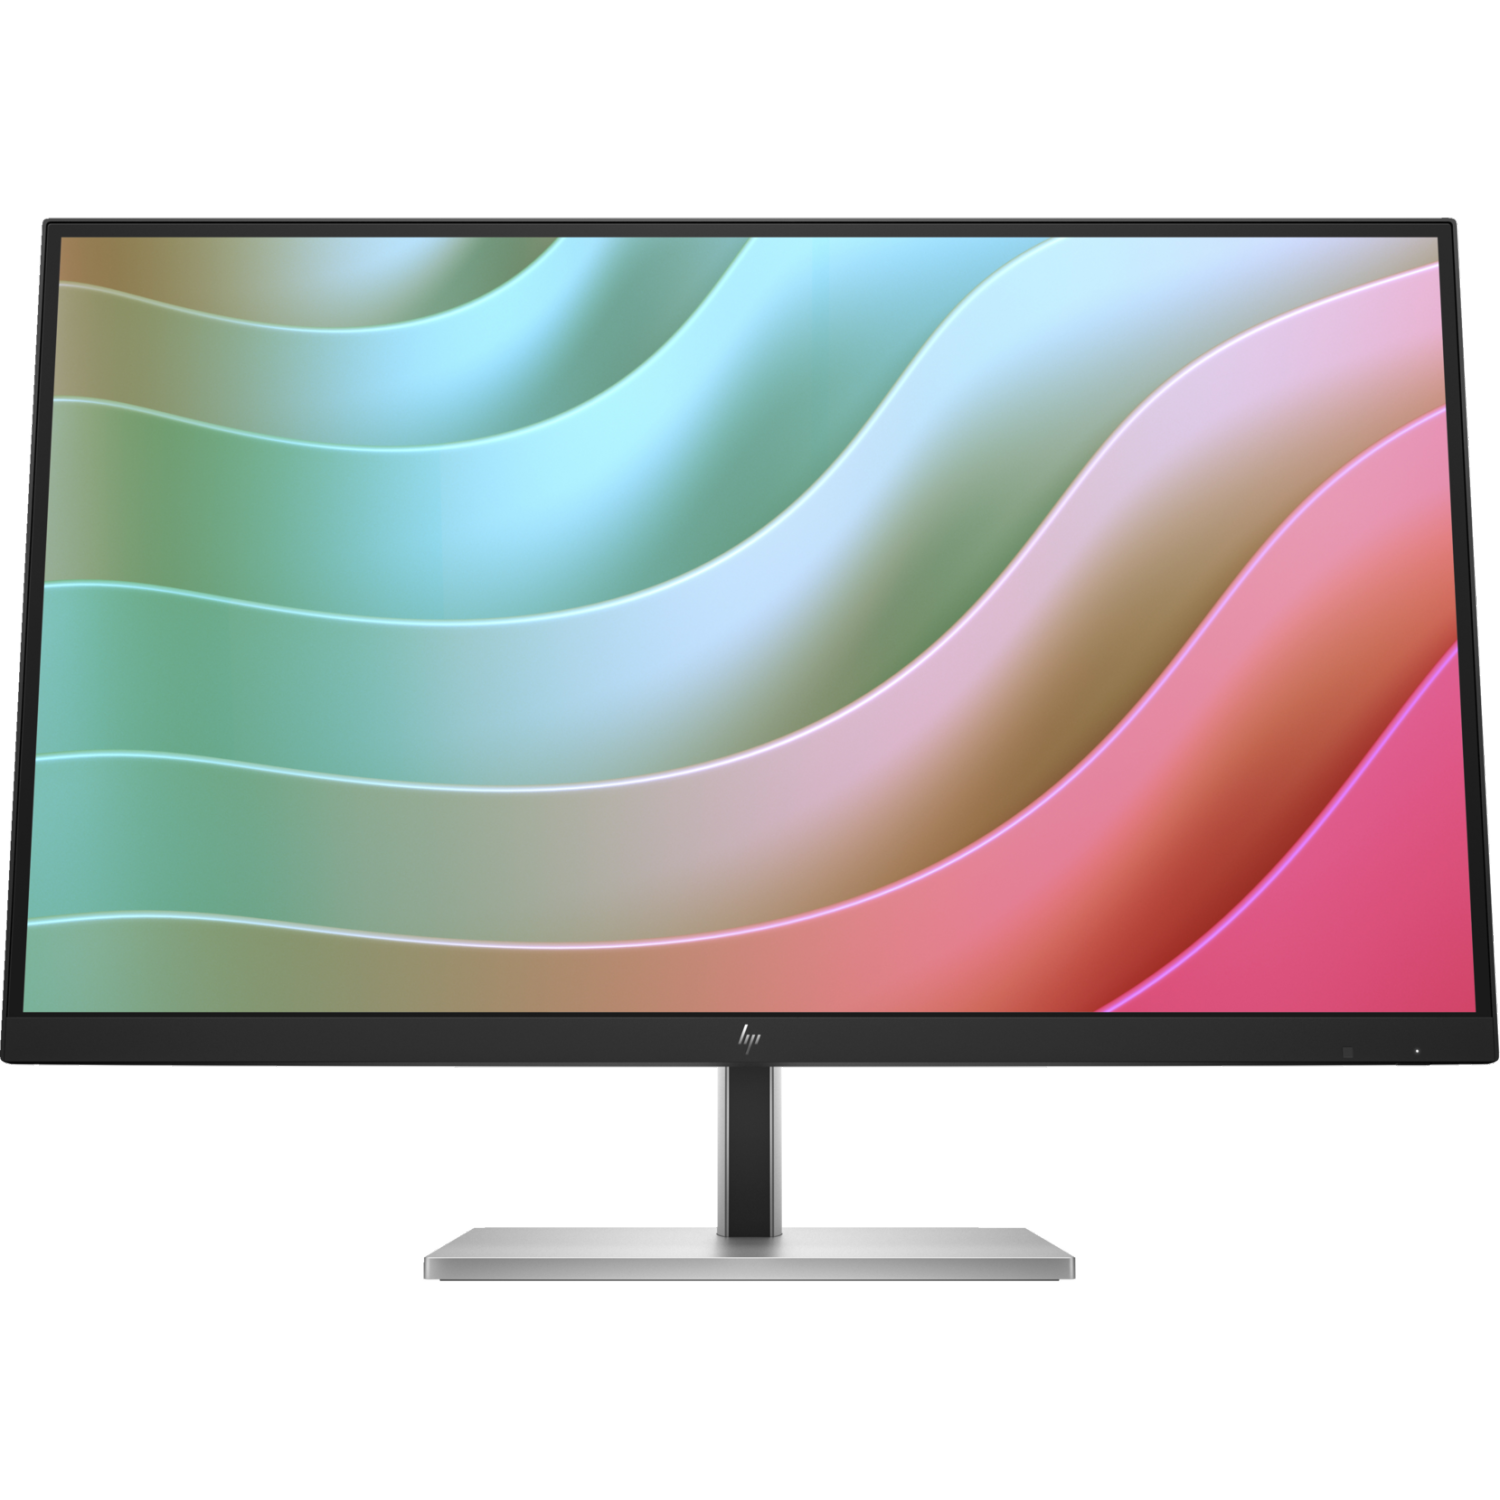 HP 27" 4K UHD 60Hz 5ms GTG IPS LCD Monitor (6N4C4AA#ABA) - Black, Silver